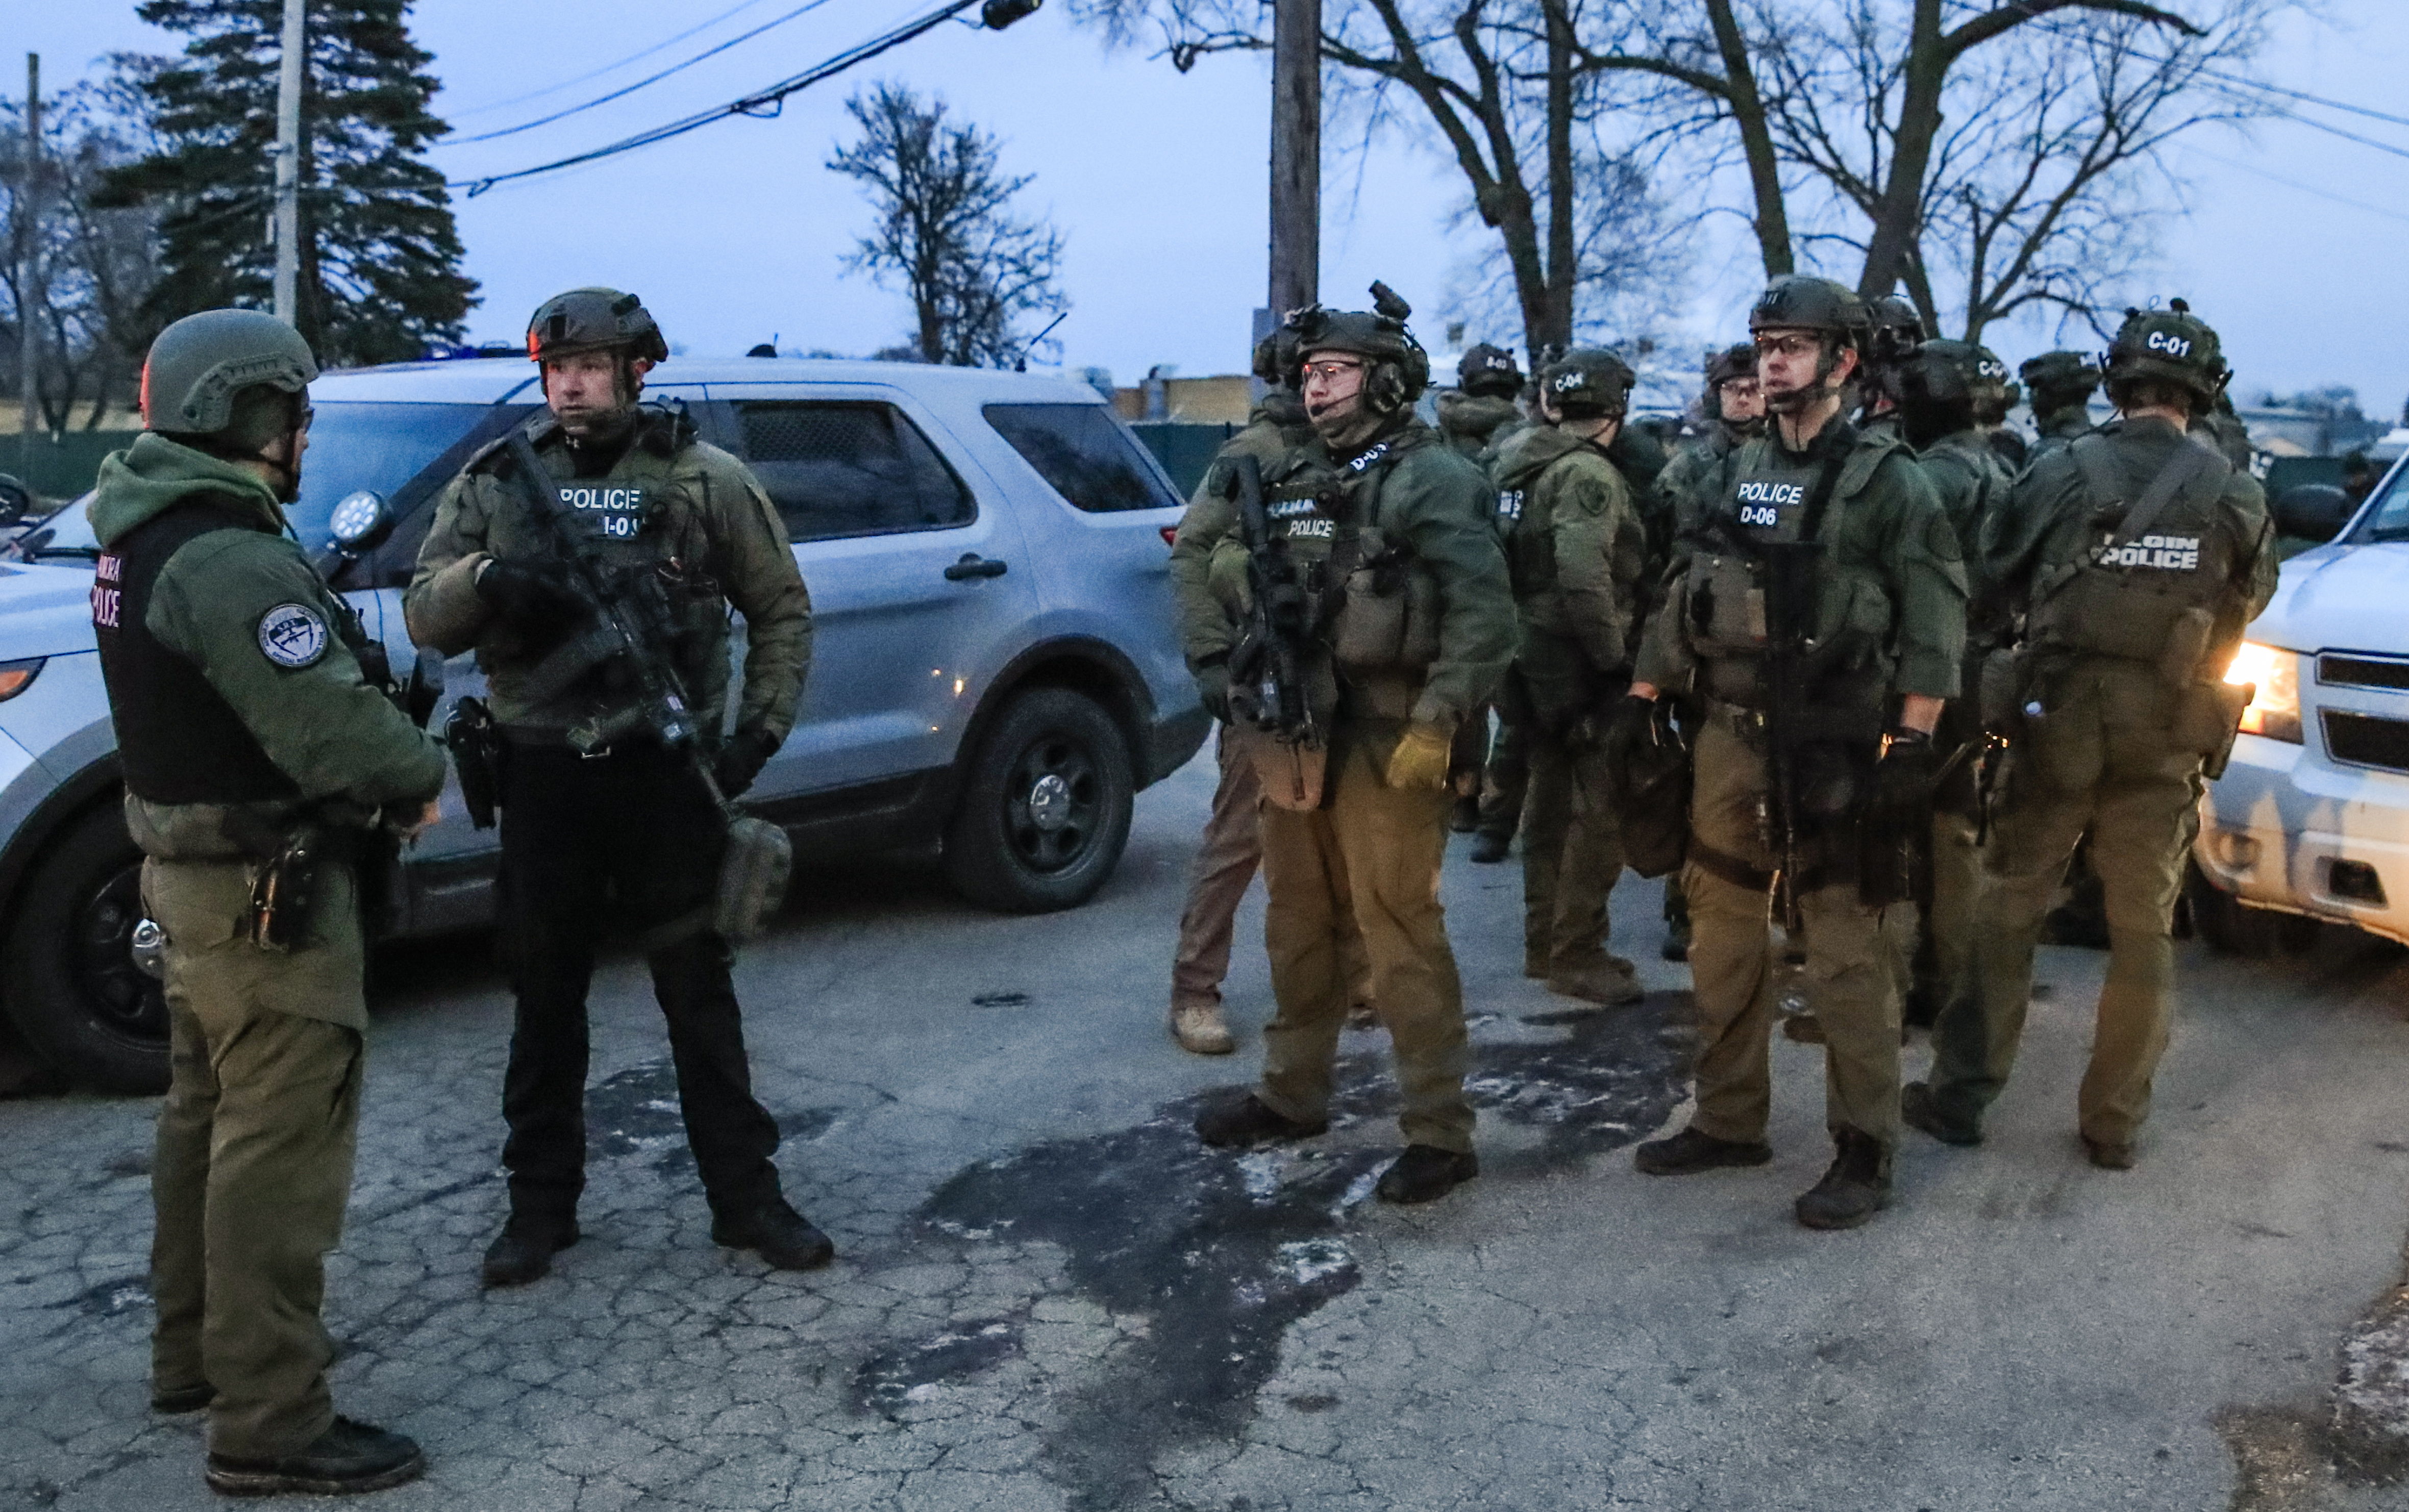 Fuerzas de élite resguardan la escena de la balacera, en Aurora, Illinois. (Foto Prensa Libre: EFE)